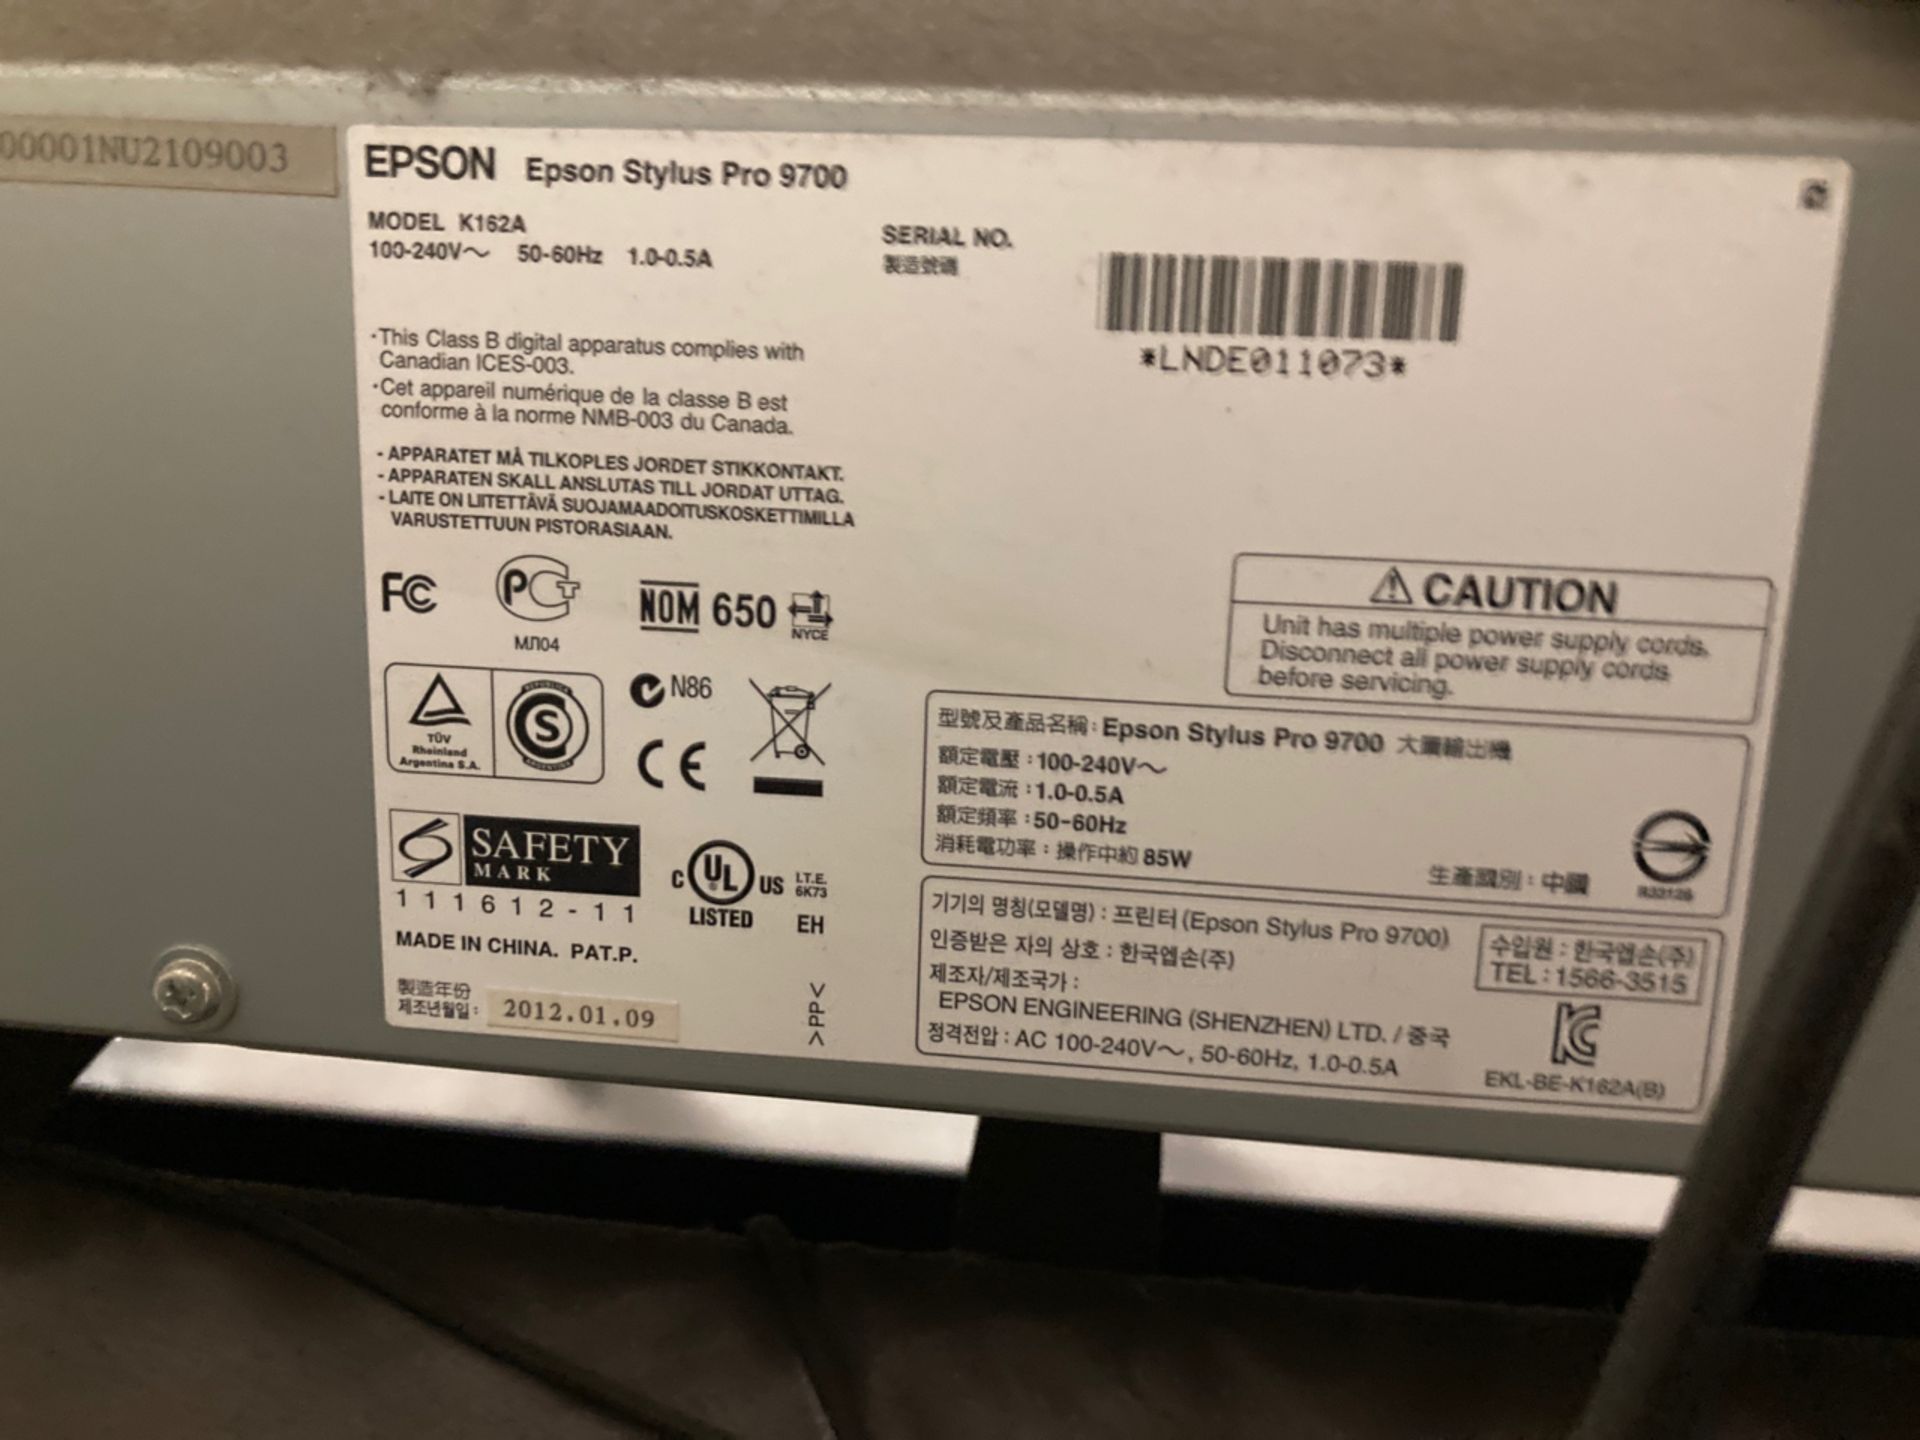 Epson Stylus Pro 9700 - Image 3 of 3